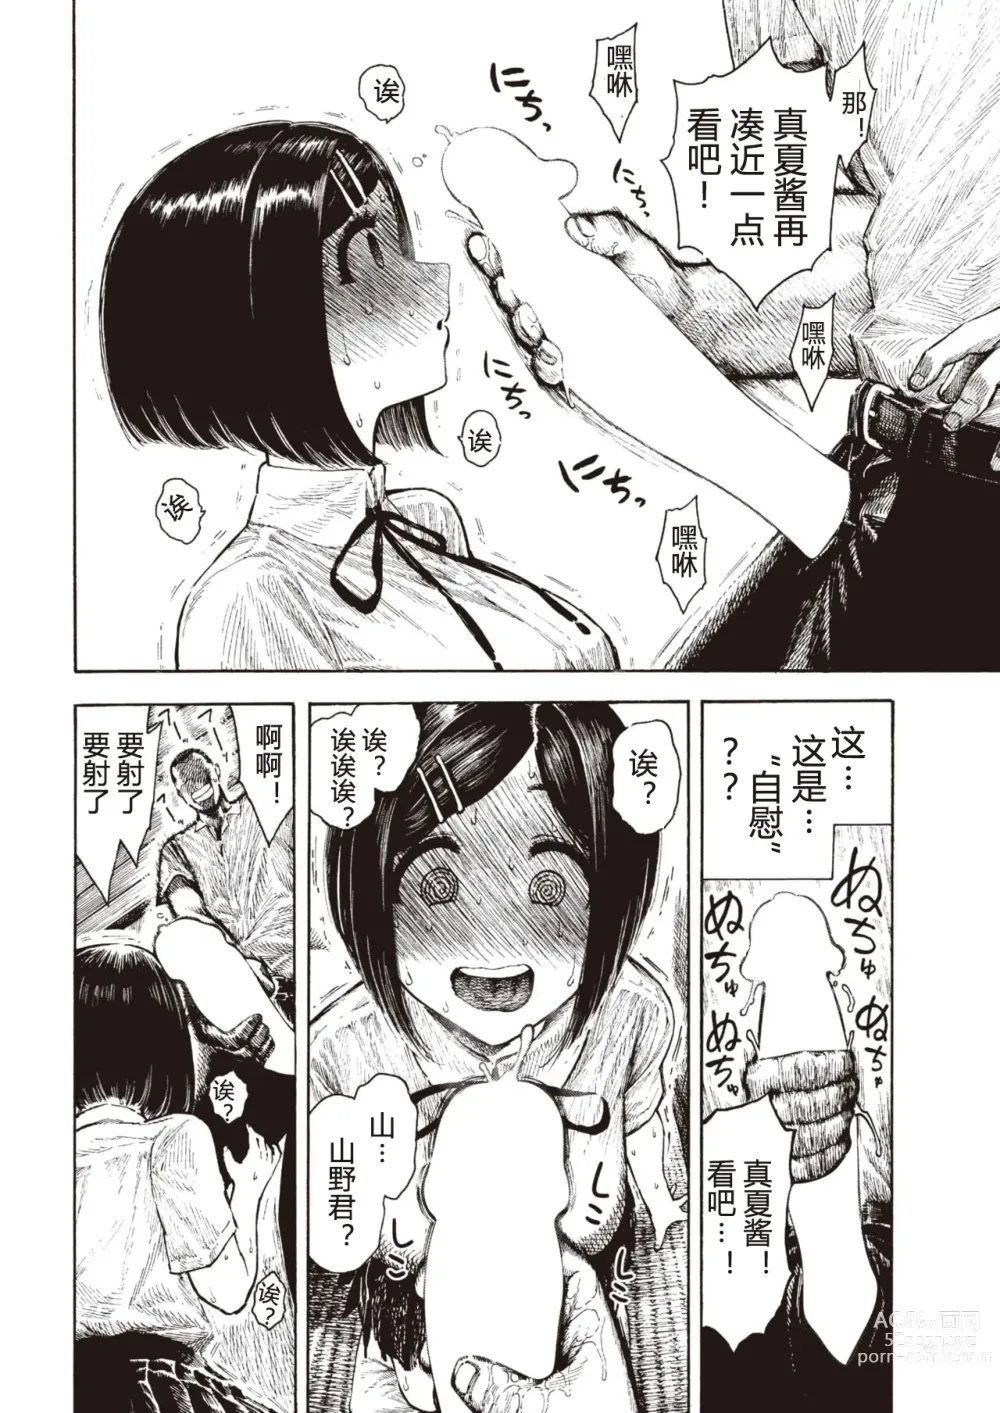 Page 10 of manga Manatsu-chan no Benkyoukai